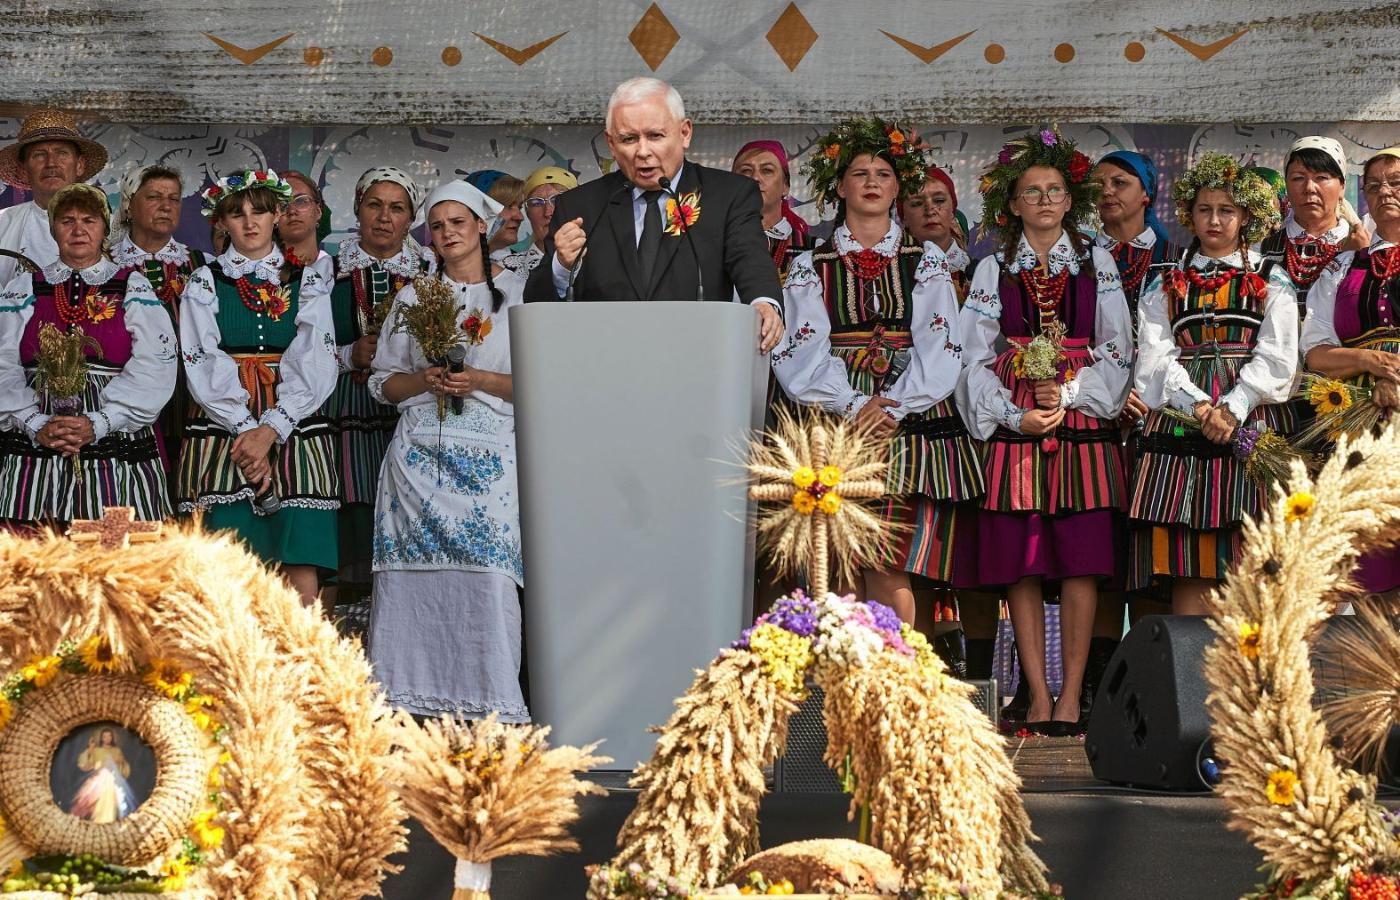 Prezes Prawa i Sprawiedliwości Jarosław Kaczyński podczas dożynek w Paradyżu obiecał czternastą emeryturę w wysokości 2,2 tys. zł netto.